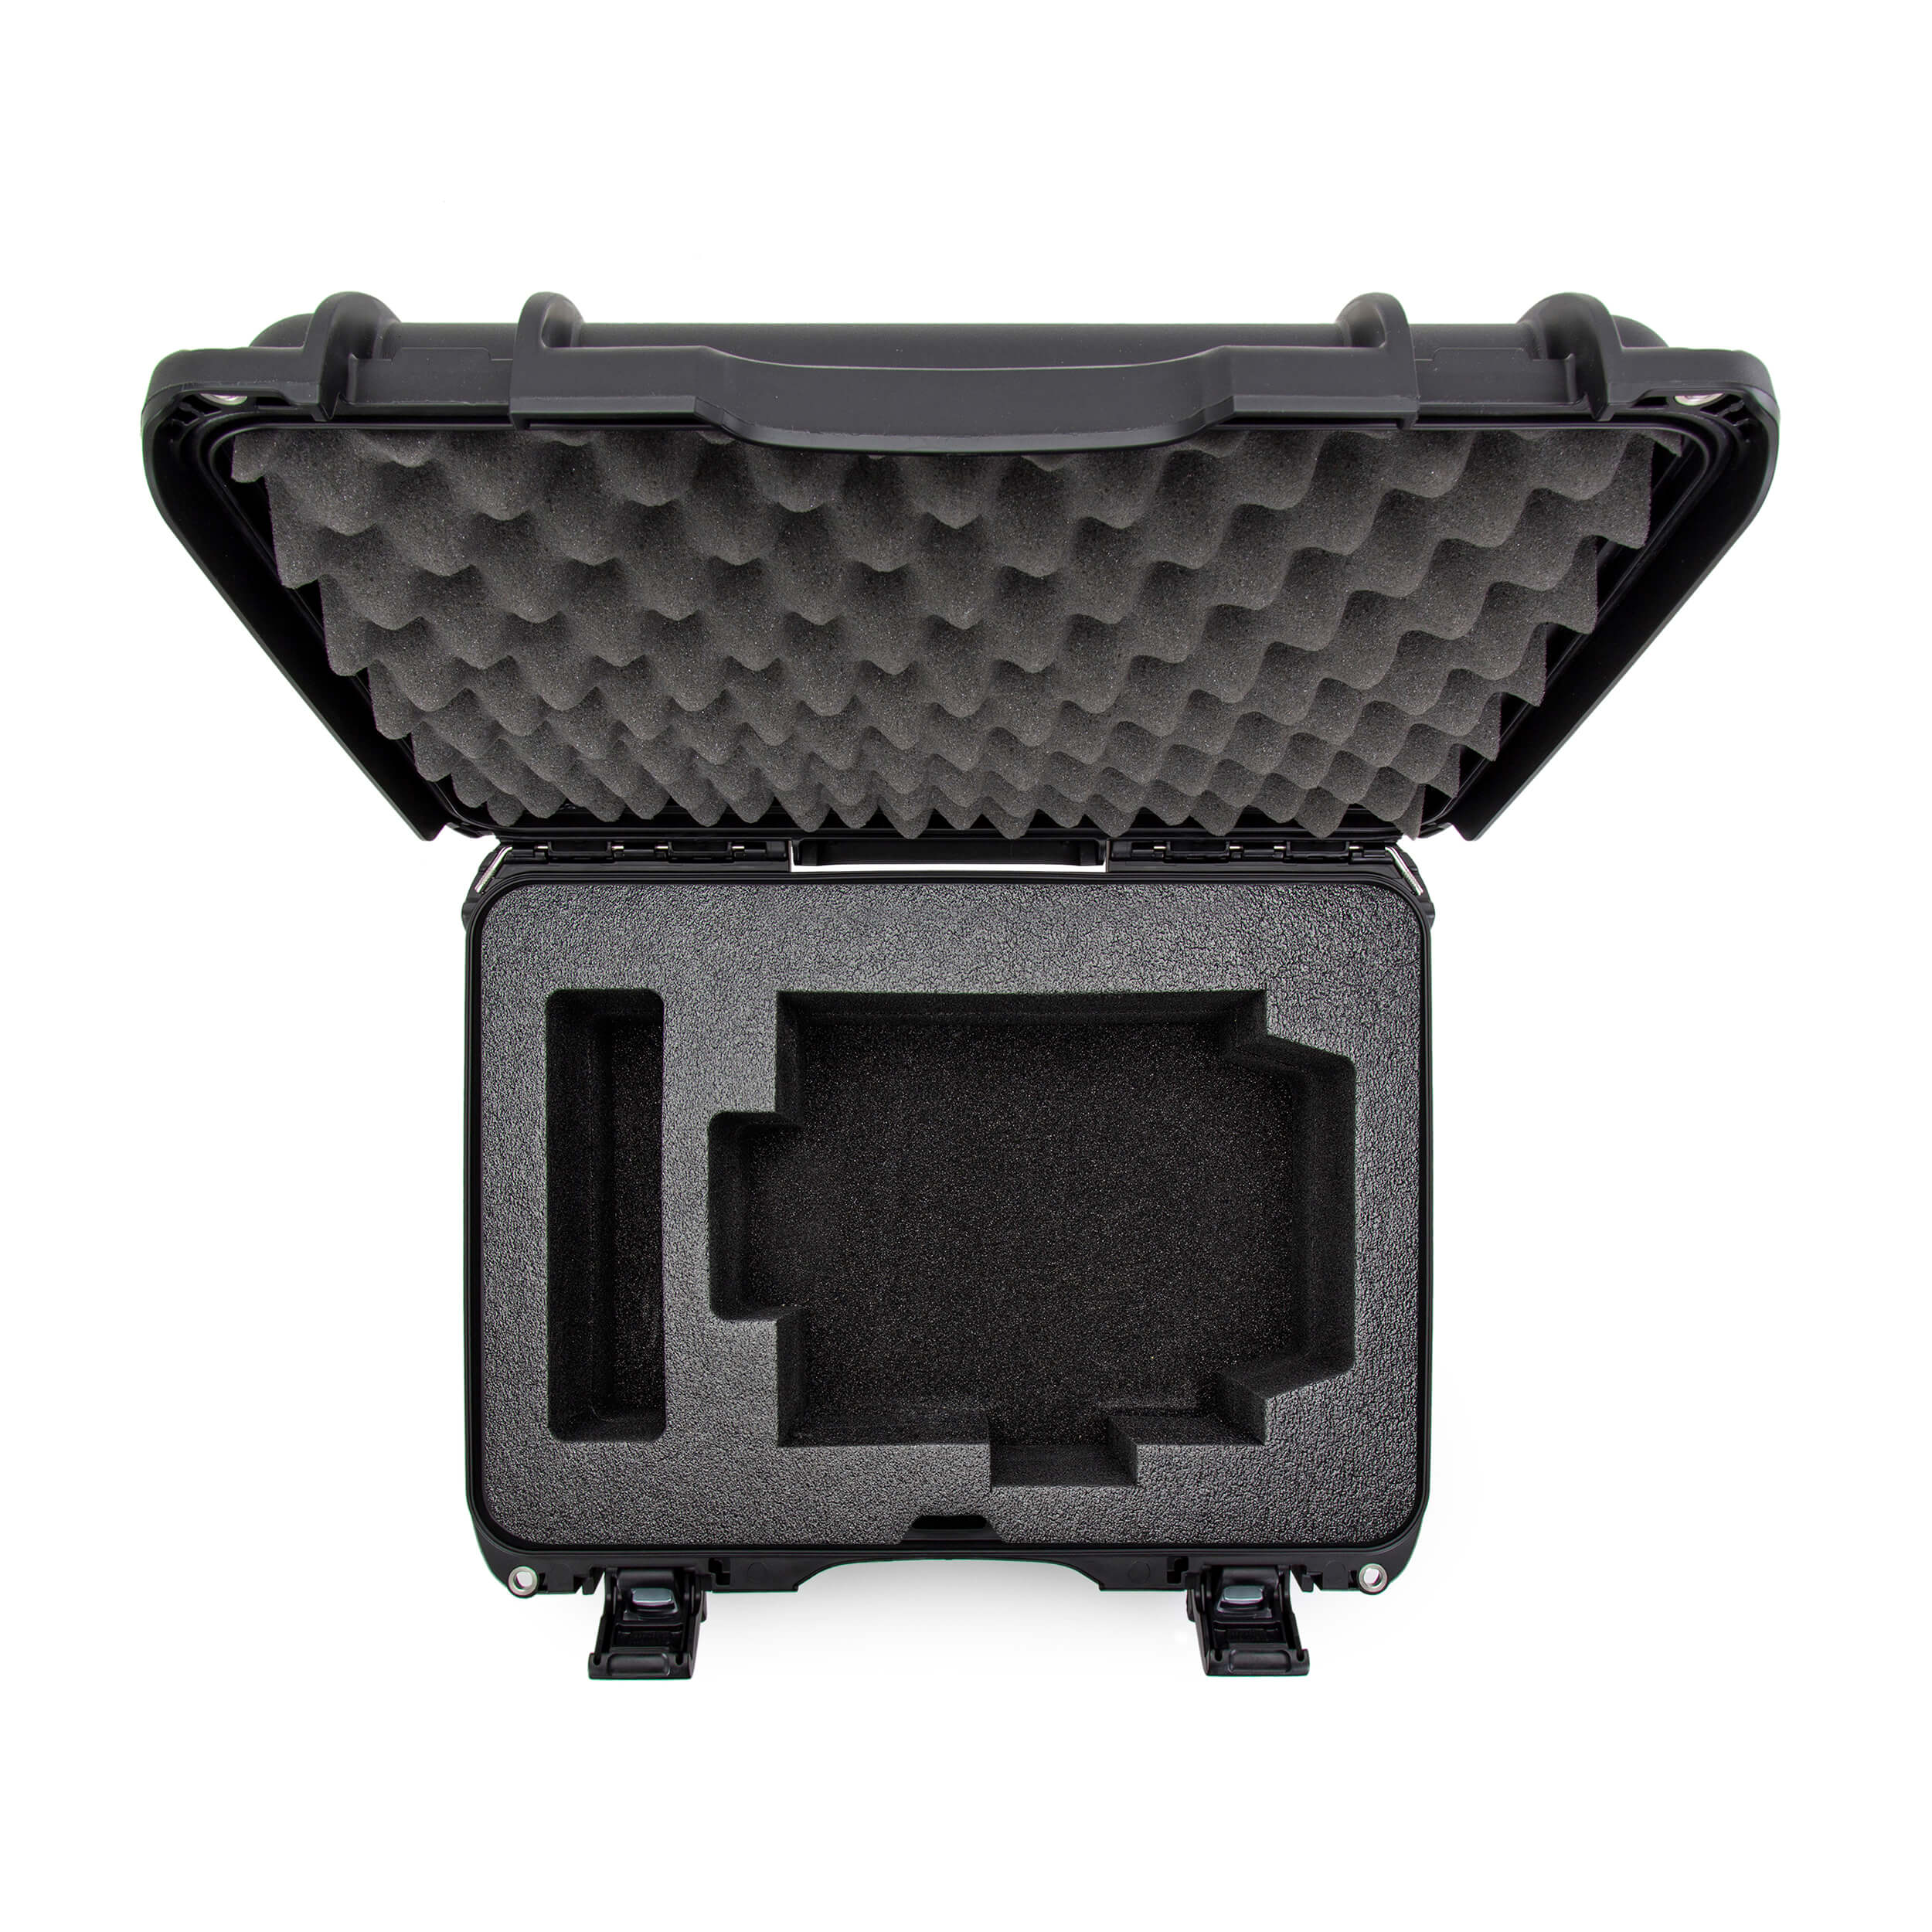 NANUK Media 925 For Matterport Pro1 or Pro2 3D Camera Black